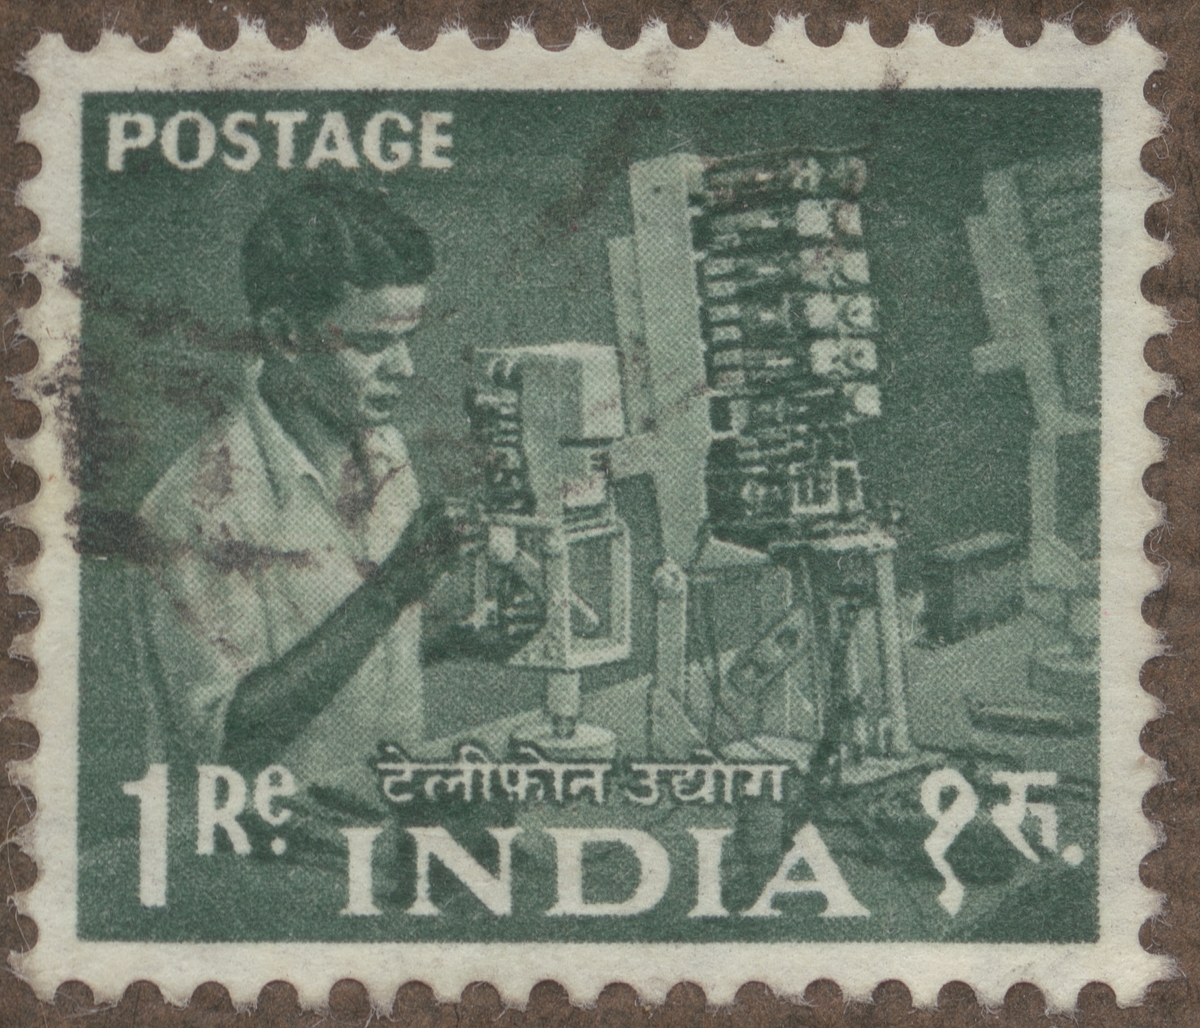 Frimärke ur Gösta Bodmans filatelistiska motivsamling, påbörjad 1950. Frimärke från Indien, 1955. Motiv av Telefontekniker